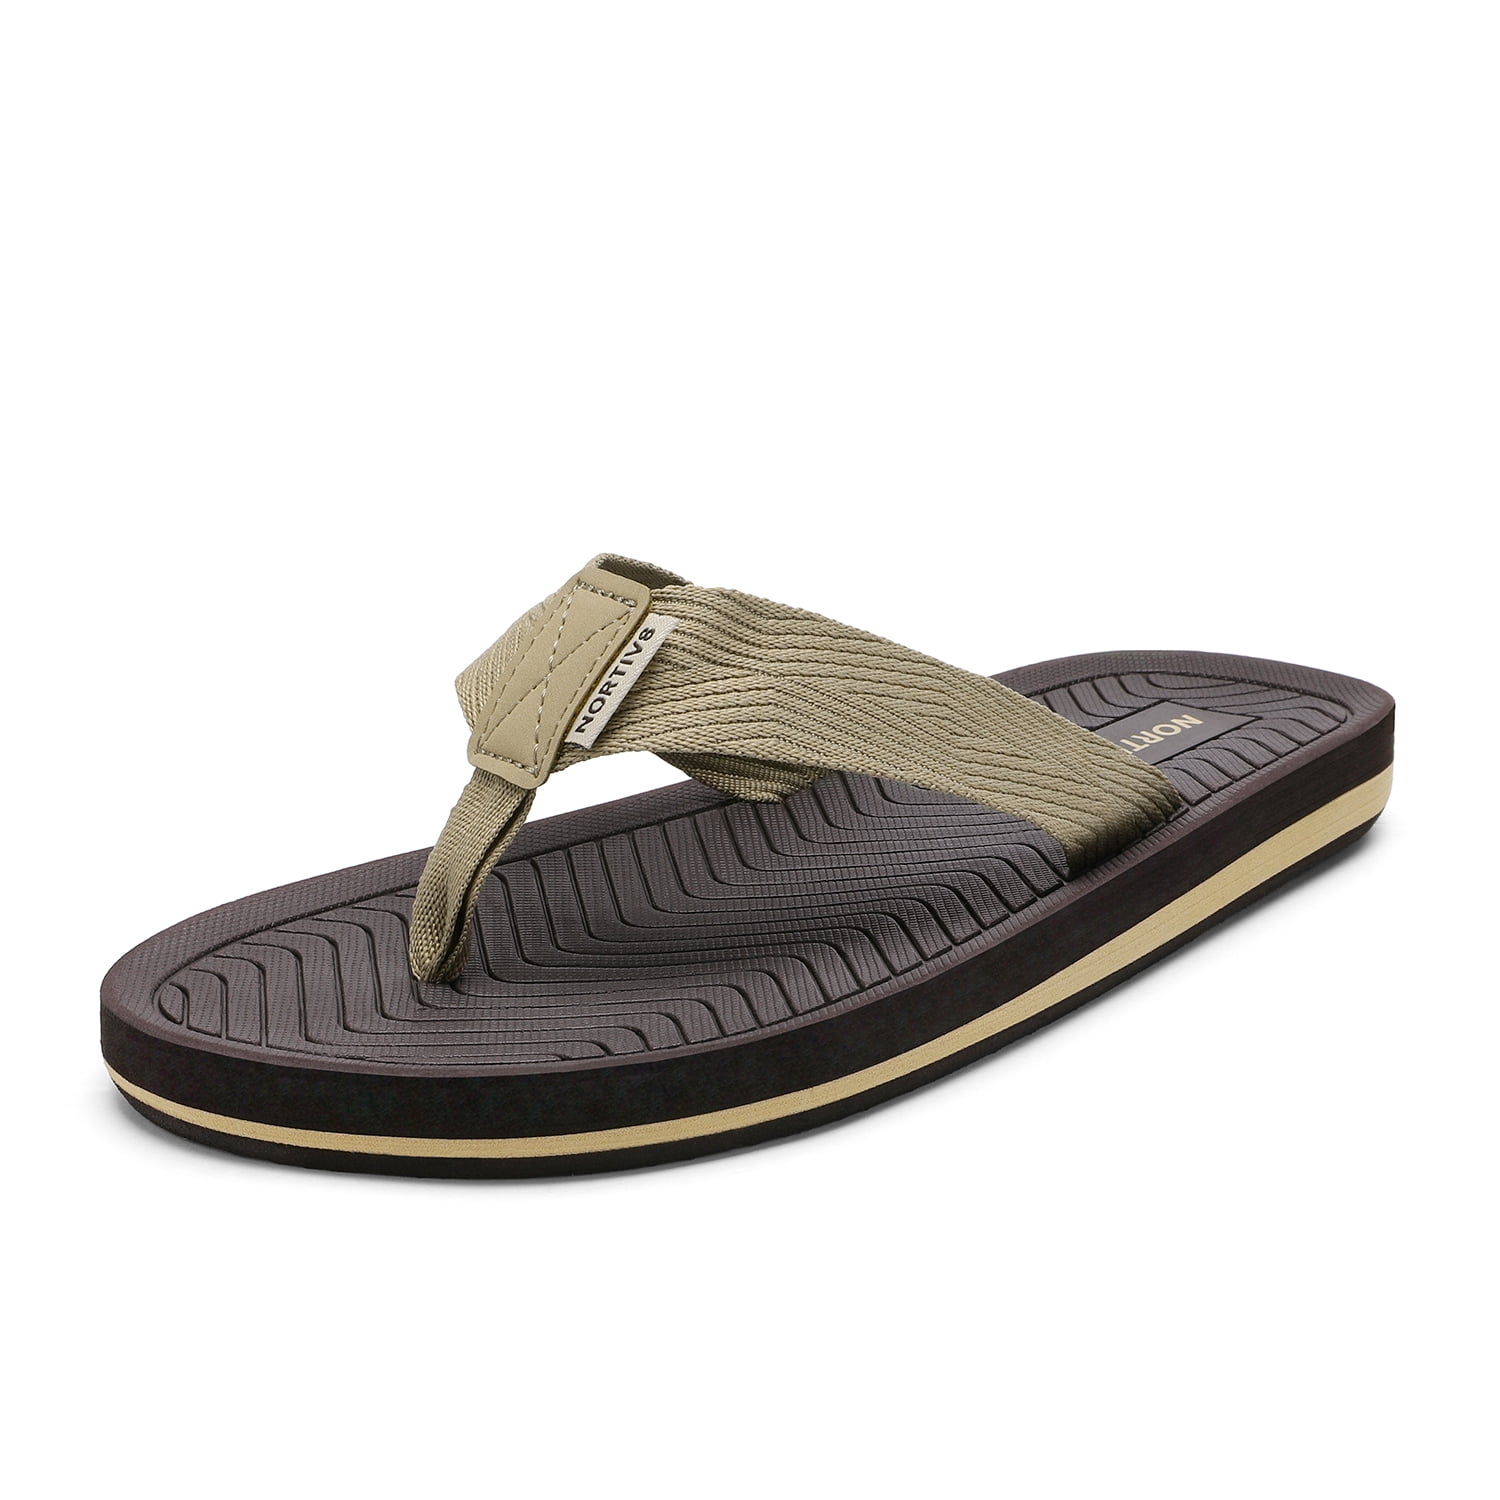 NORTIV 8 Men's Flip Flops Thong Sandals Comfortable Light Weight Beach Shoes 